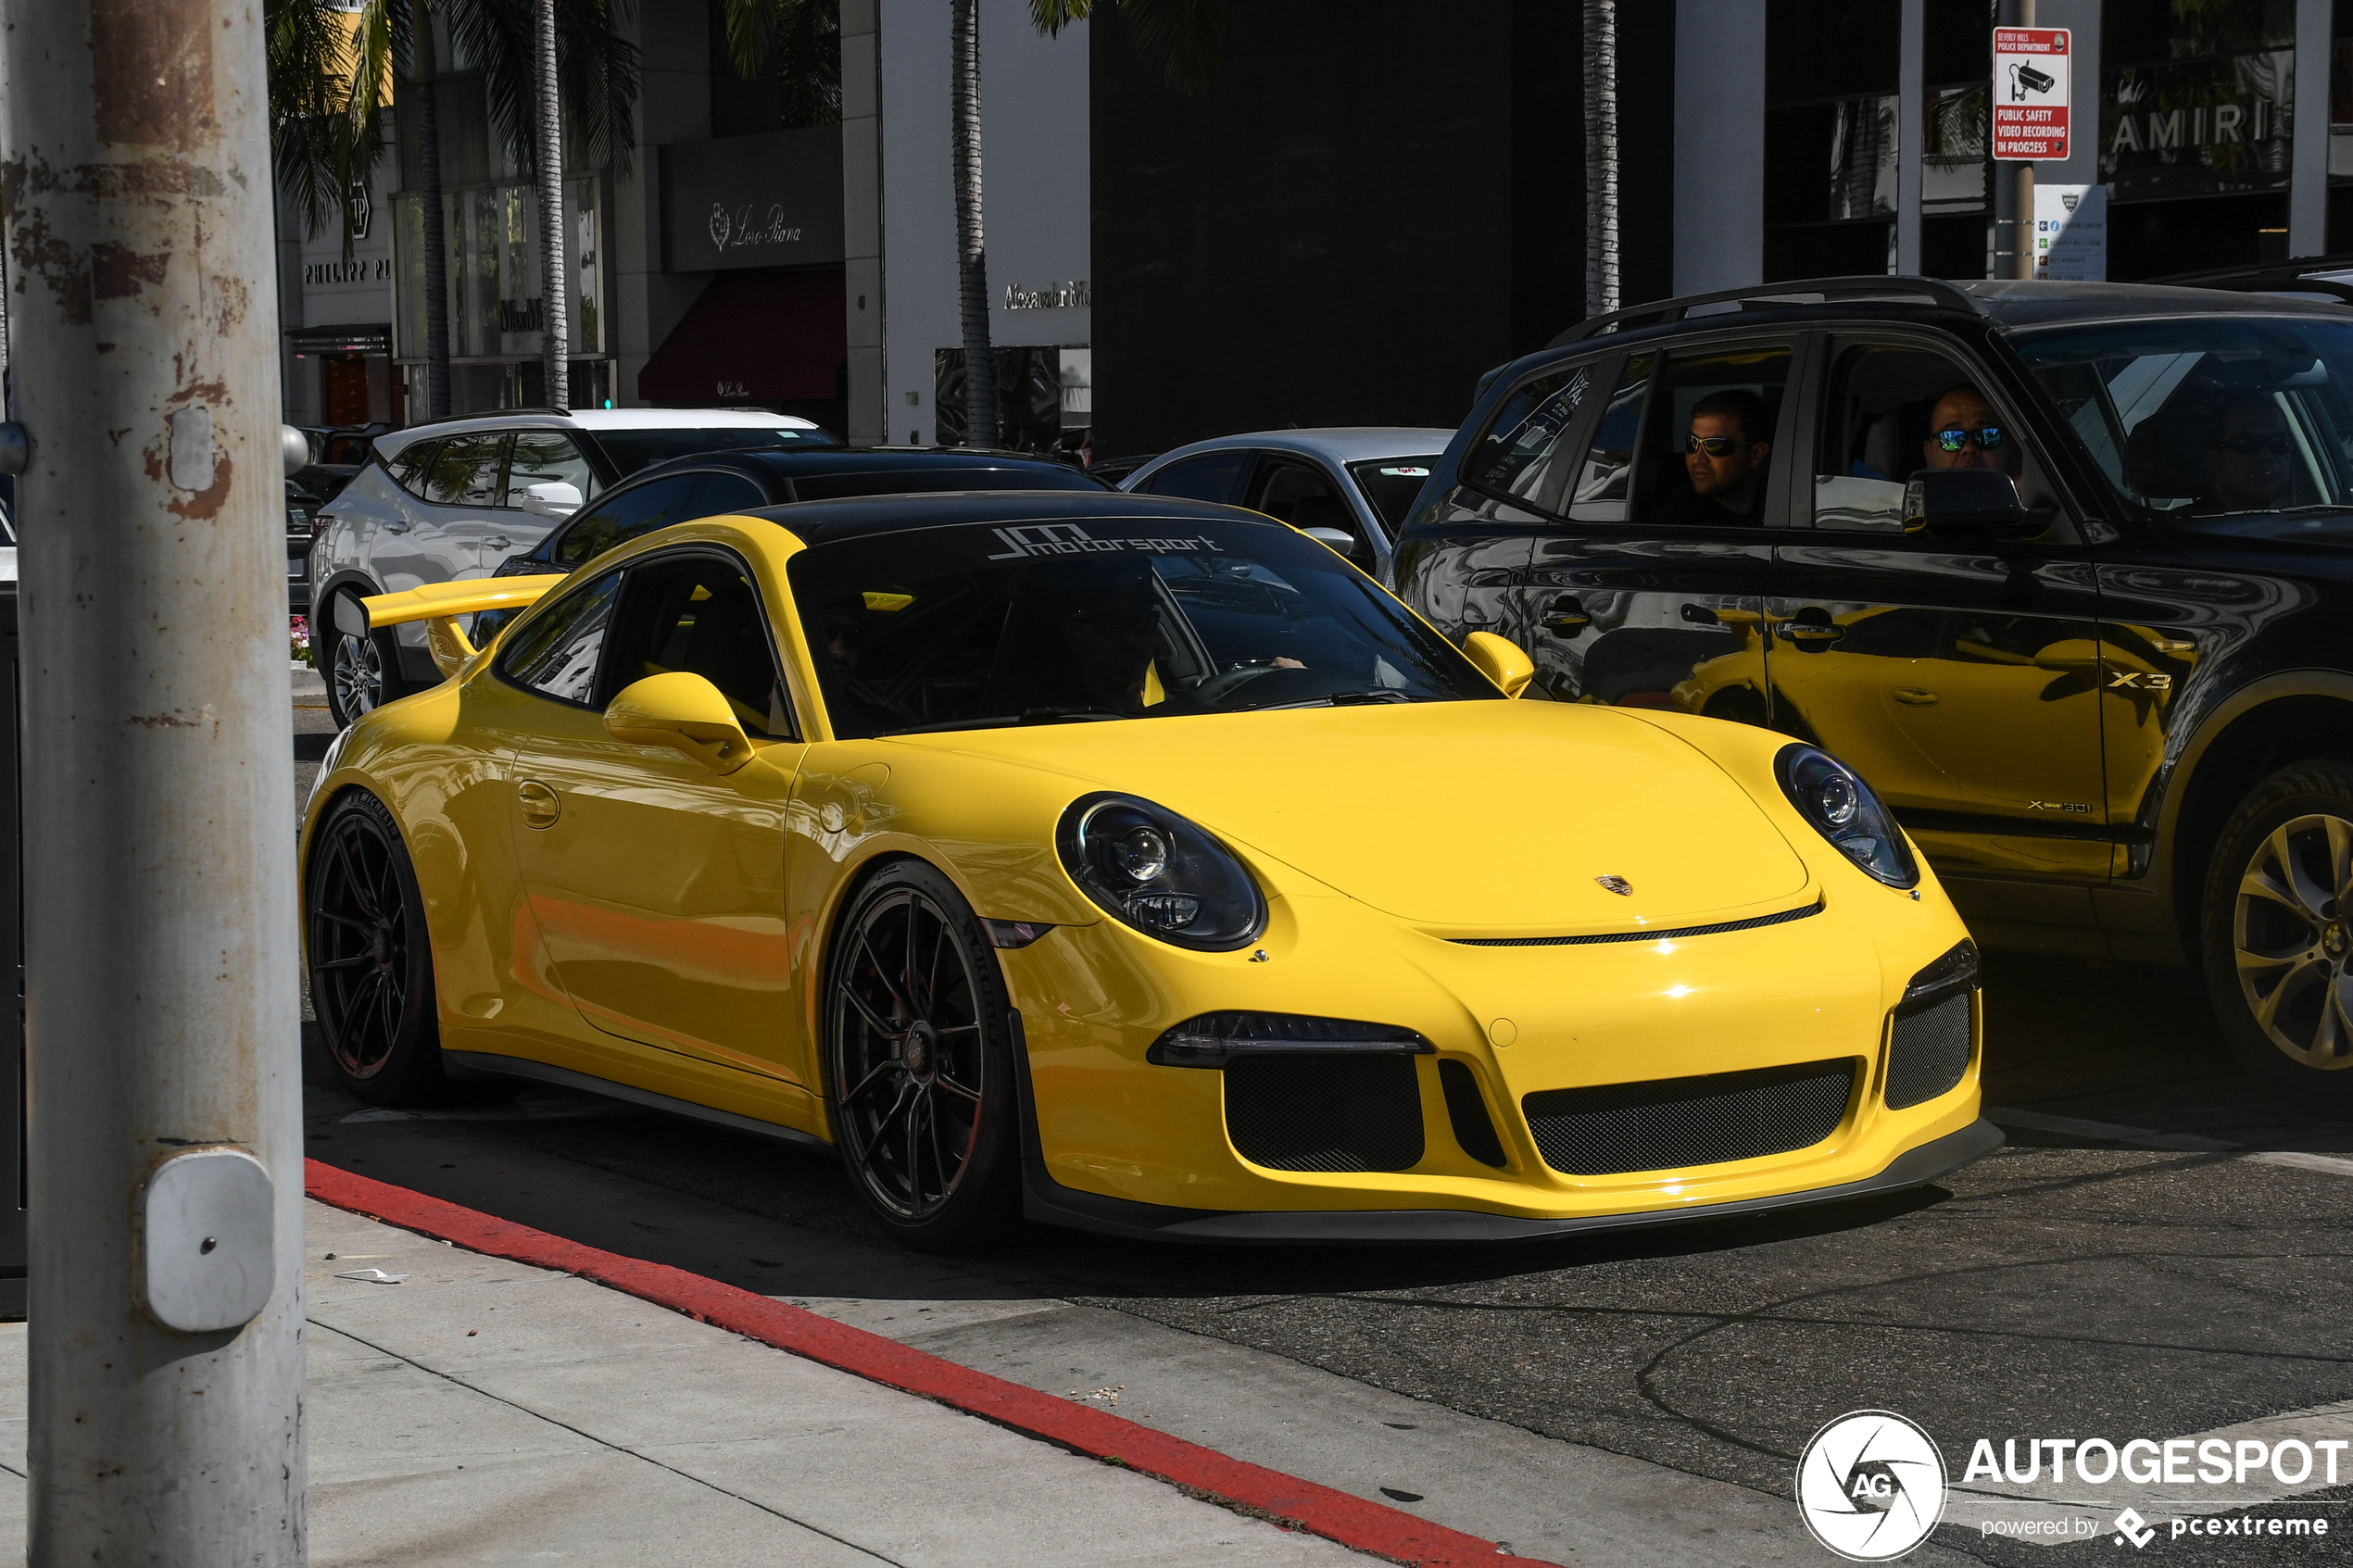 Gele Porsche GT3 trekt bekijks op Rodeo Drive